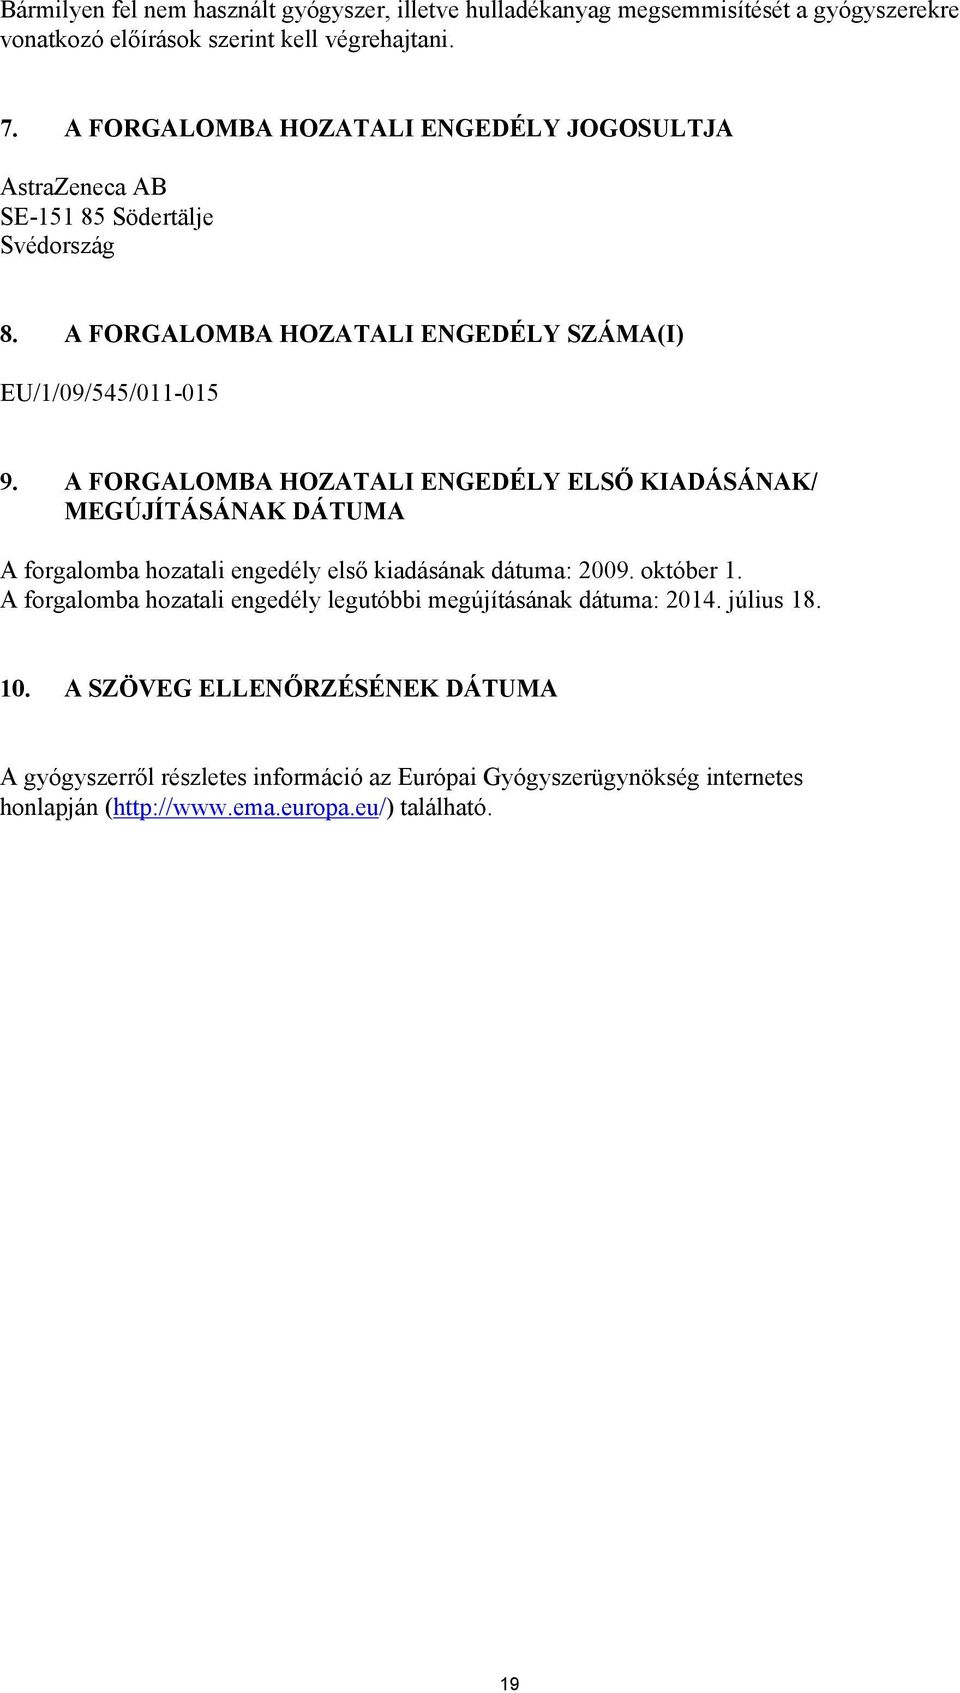 A FORGALOMBA HOZATALI ENGEDÉLY ELSŐ KIADÁSÁNAK/ MEGÚJÍTÁSÁNAK DÁTUMA A forgalomba hozatali engedély első kiadásának dátuma: 2009. október 1.